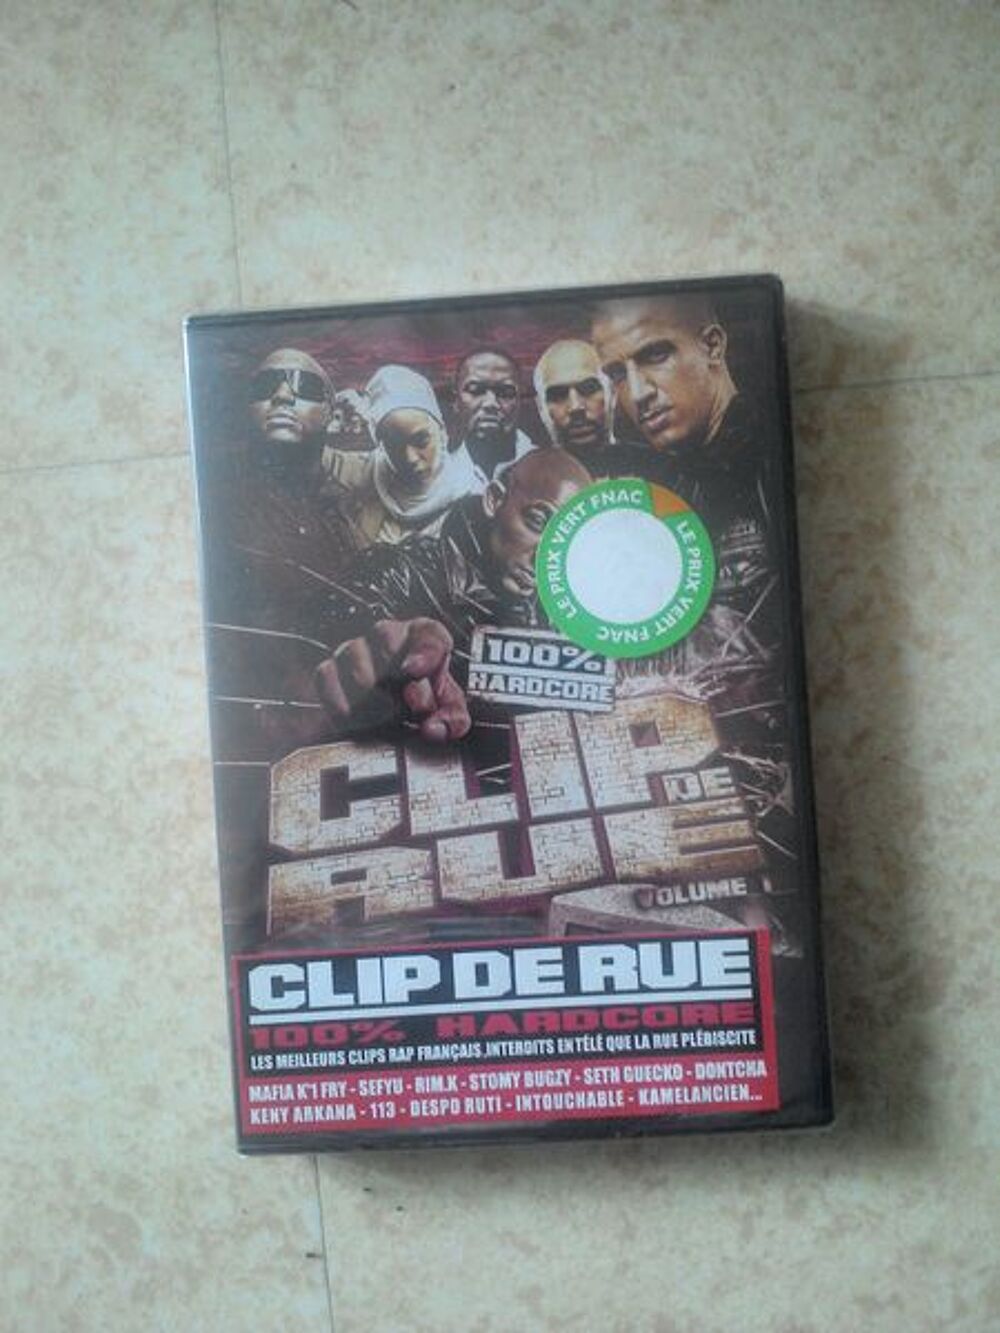 CLIP DE RUE
RIM K-SEFYU-MAFIA K1 FRY-STOMY BUGZY-DONTCHA DVD et blu-ray